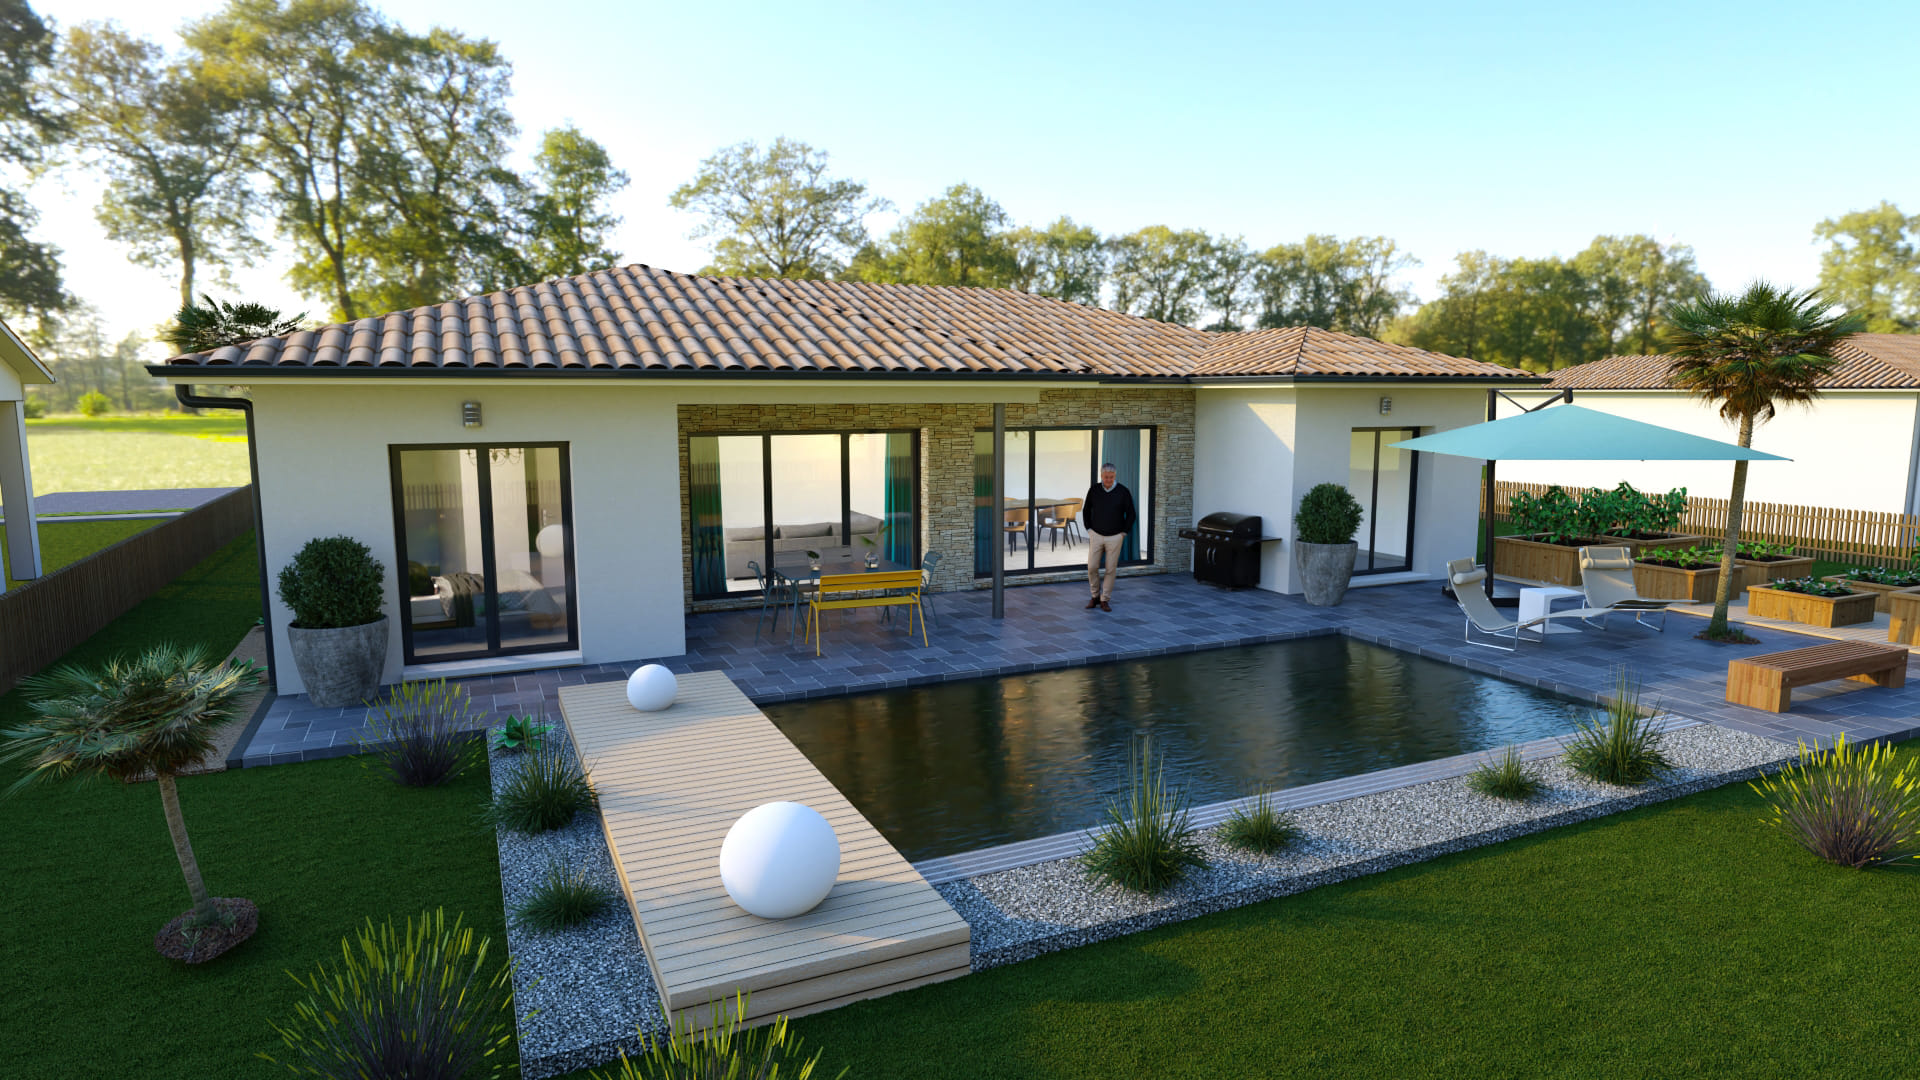 Maison avec piscine et jardin